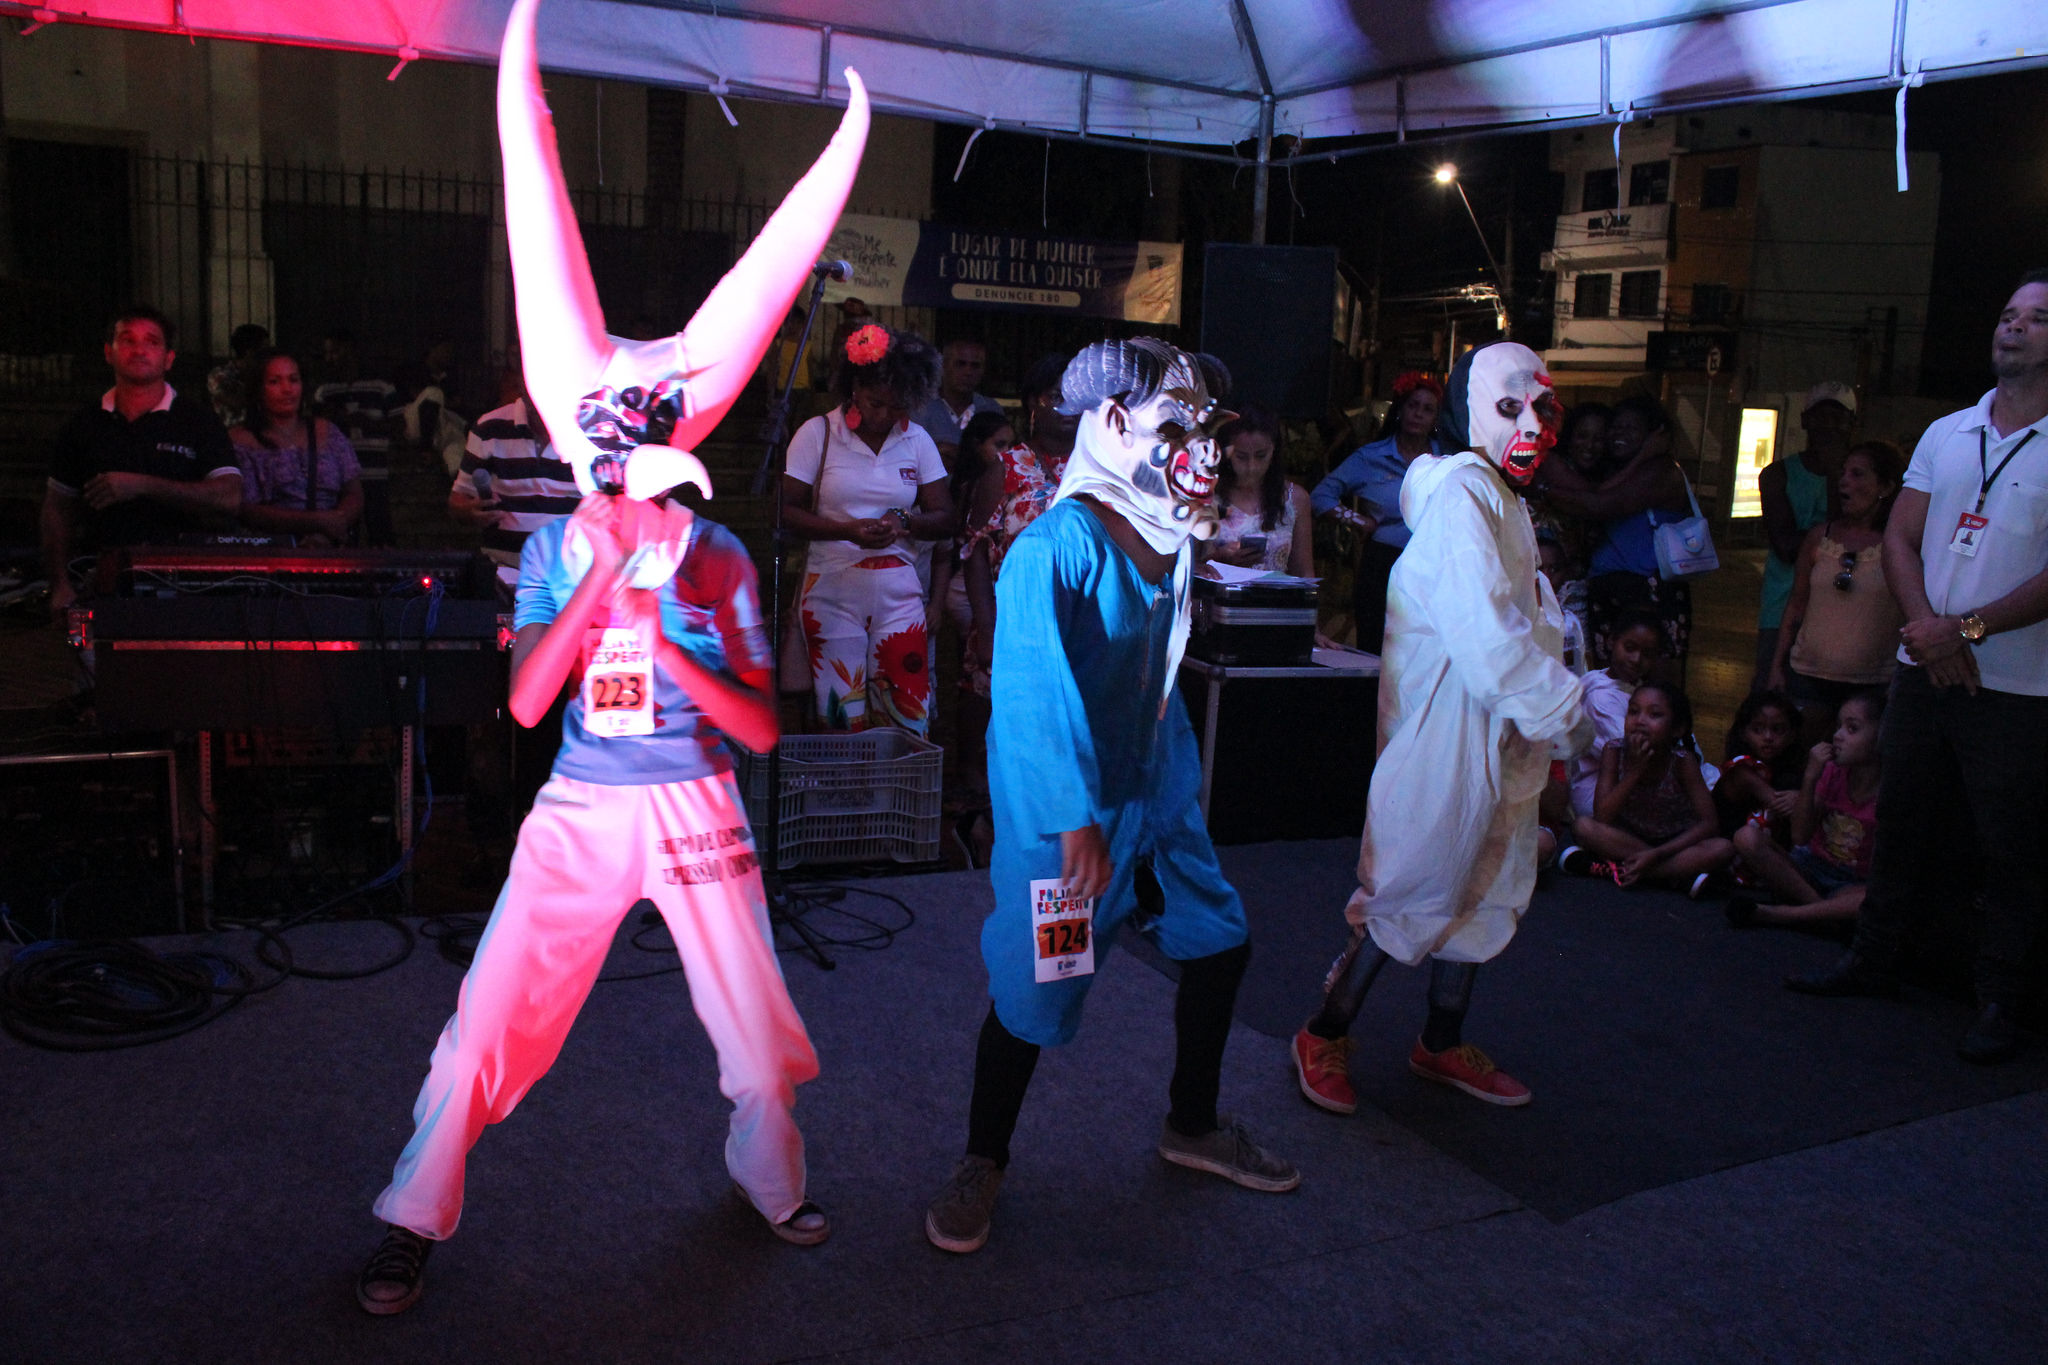 Caretas levam criatividade e animao ao Carnaval de Lauro de Freitas